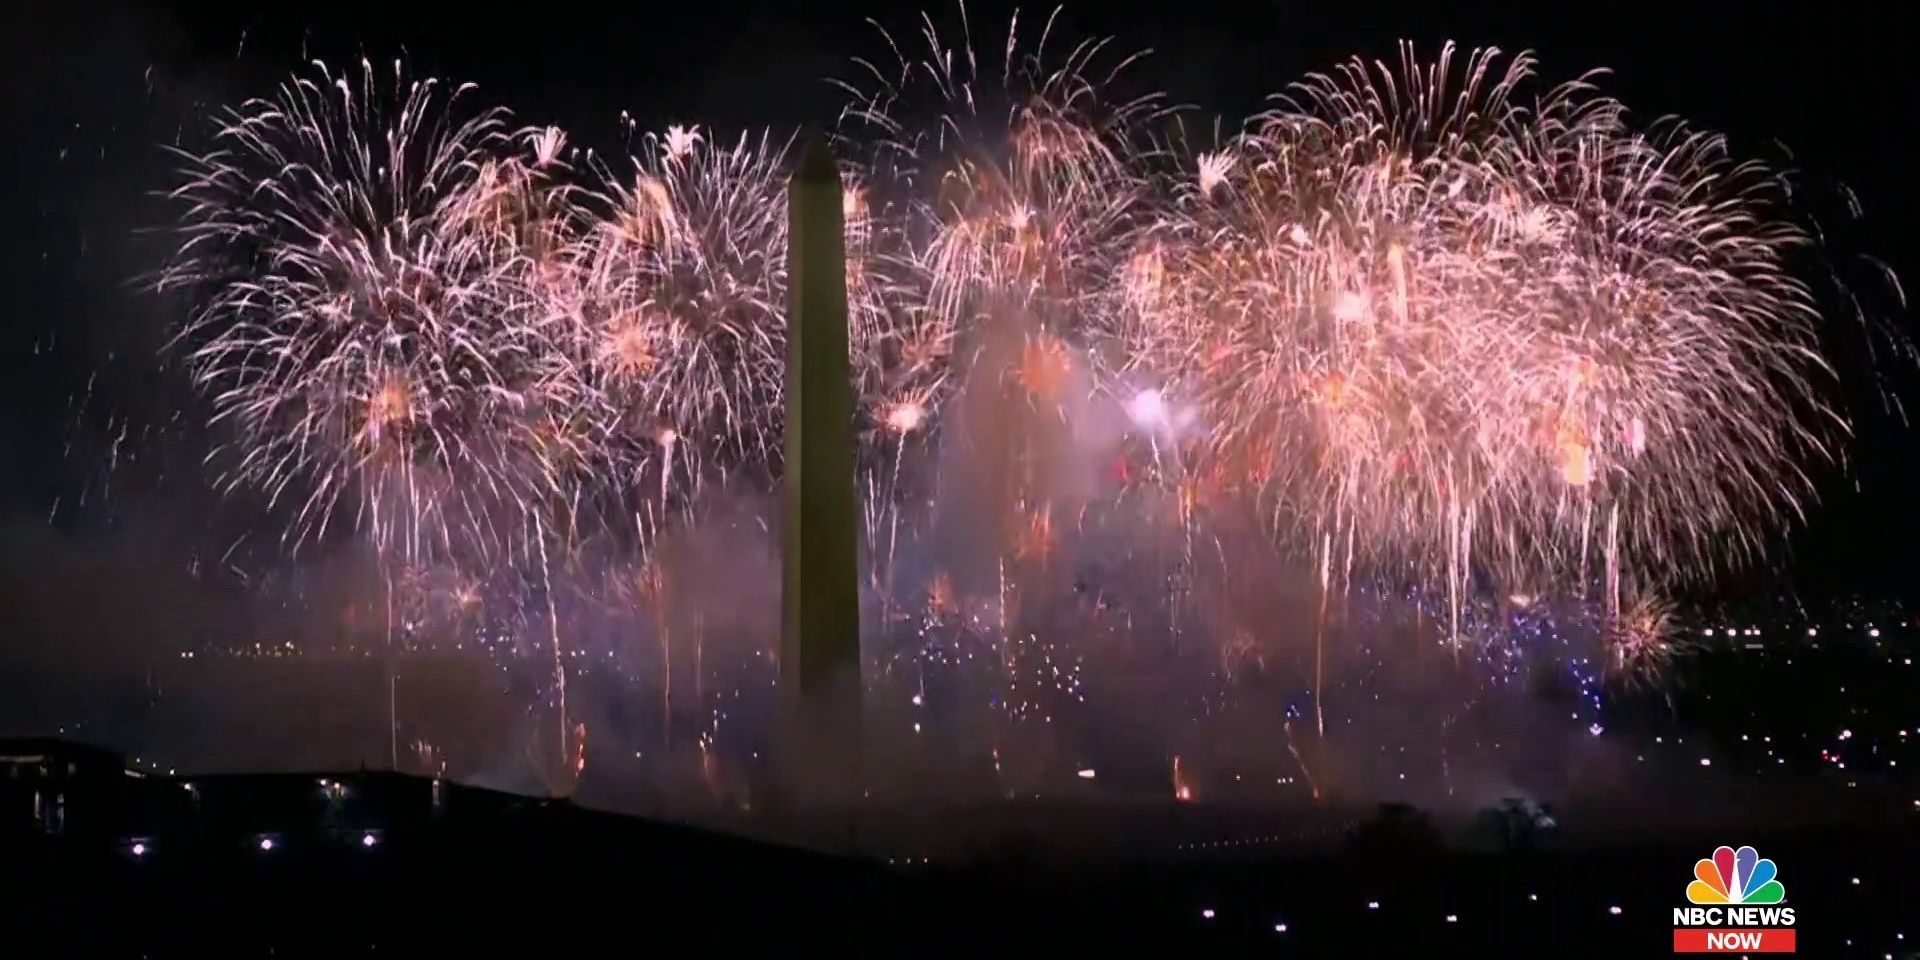 'Fogos de artifício na véspera de Ano Novo ao redor do mundo'